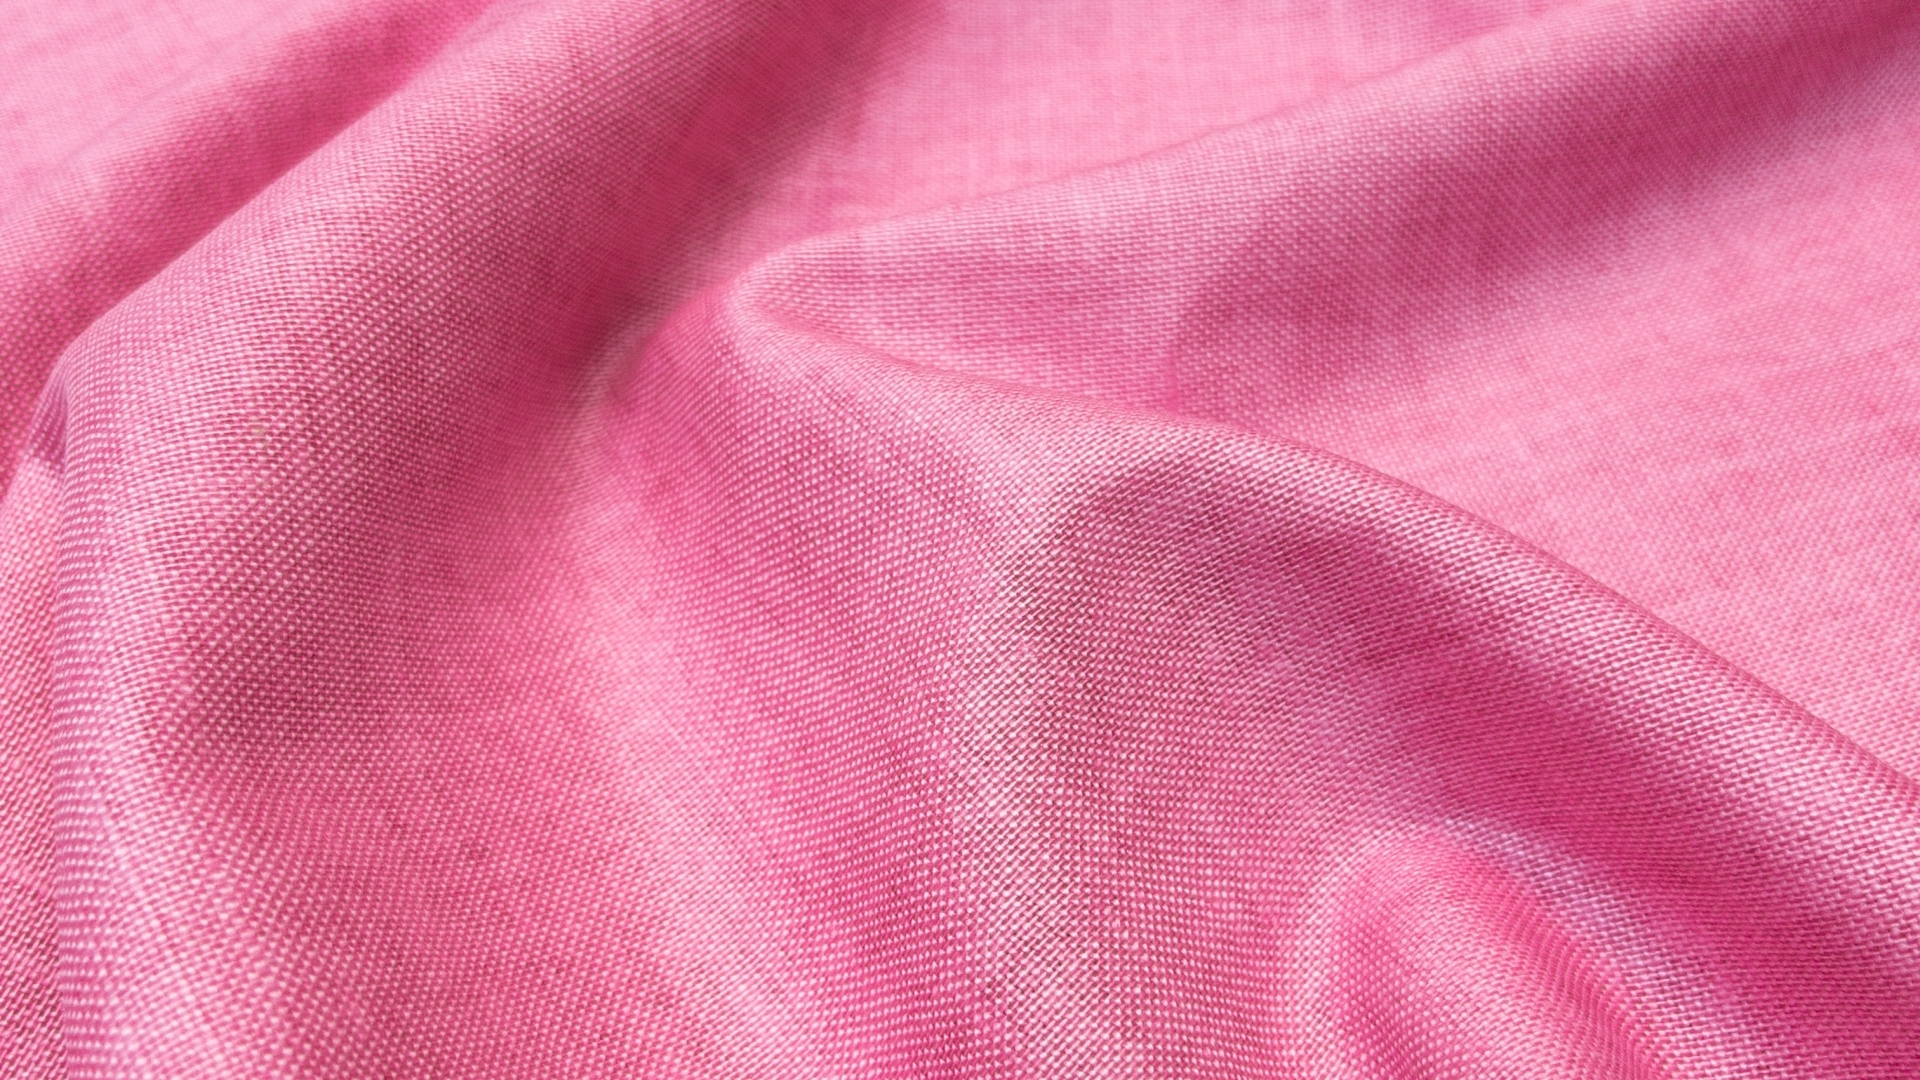 Пополнение коллекции великолепного льна с вискозой. 
Насыщенный розовый цвет. 
Гладкое и лощеное полотно, с красивым отливом.  Совершенно универсальное, хорошо будет смотреться и в рубашке, и в летнем пиджаке, и в широких брюках, и в юбке, и в прямом платье свободного кроя.